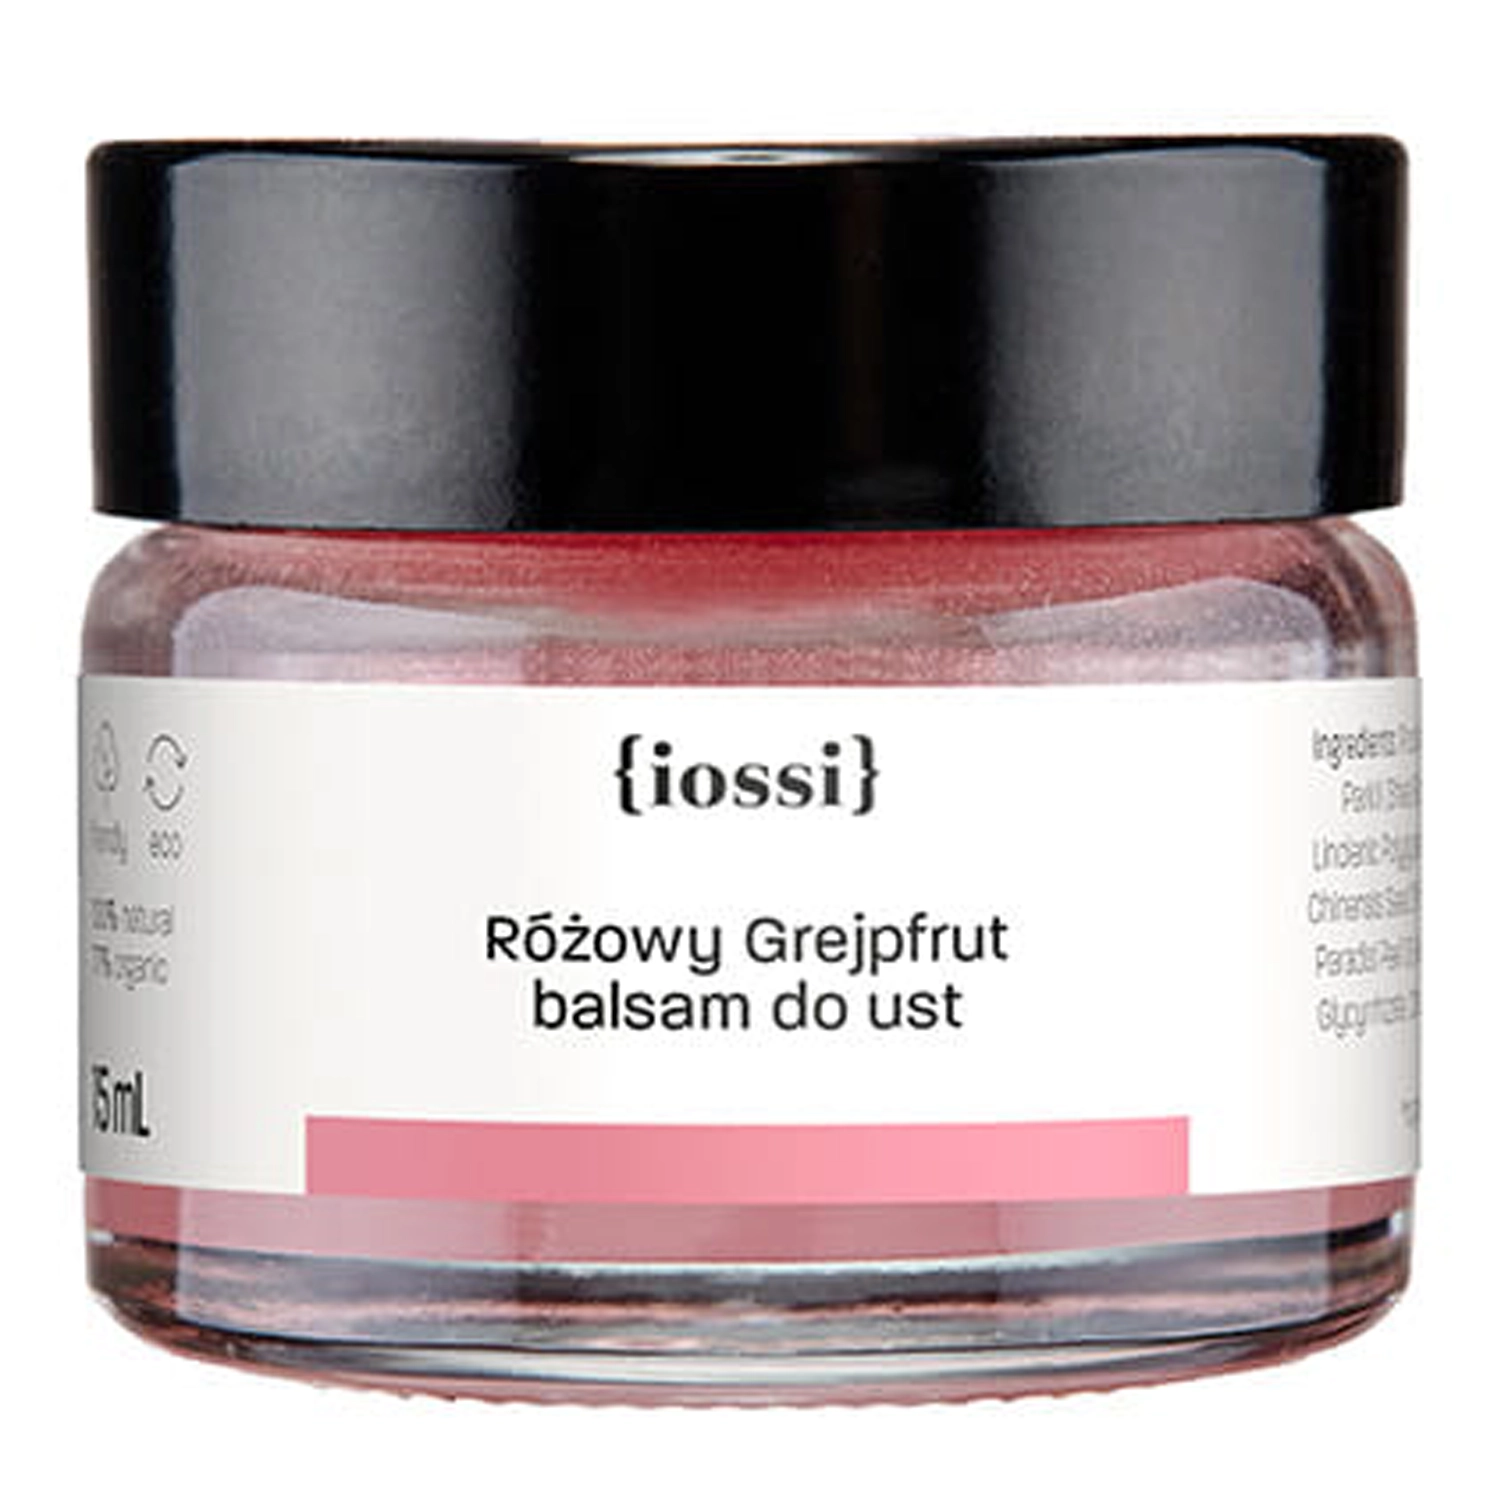 Iossi - Бальзам для губ - Розовый грейпфрут - 15ml